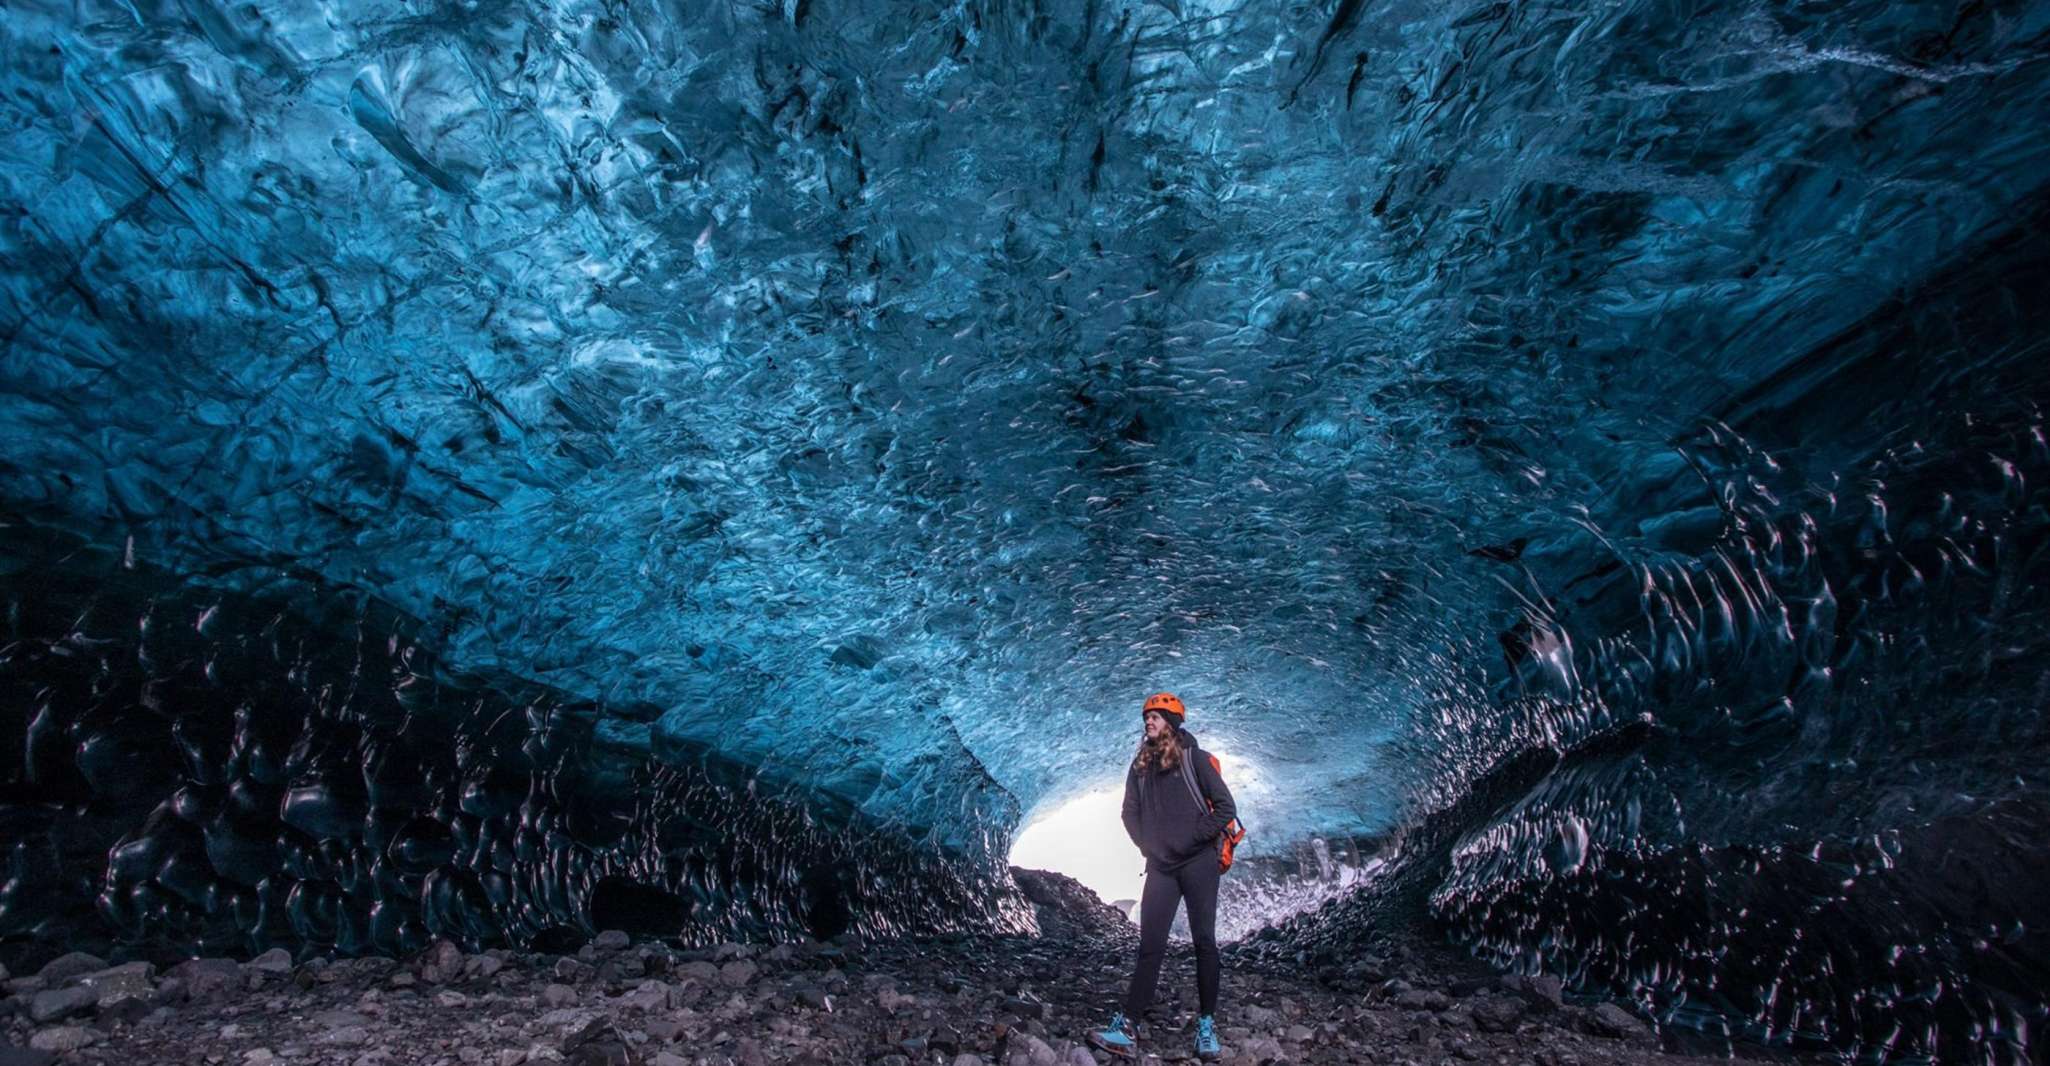 From Jökulsárlón, Crystal Ice Cave Guided Day Trip - Housity